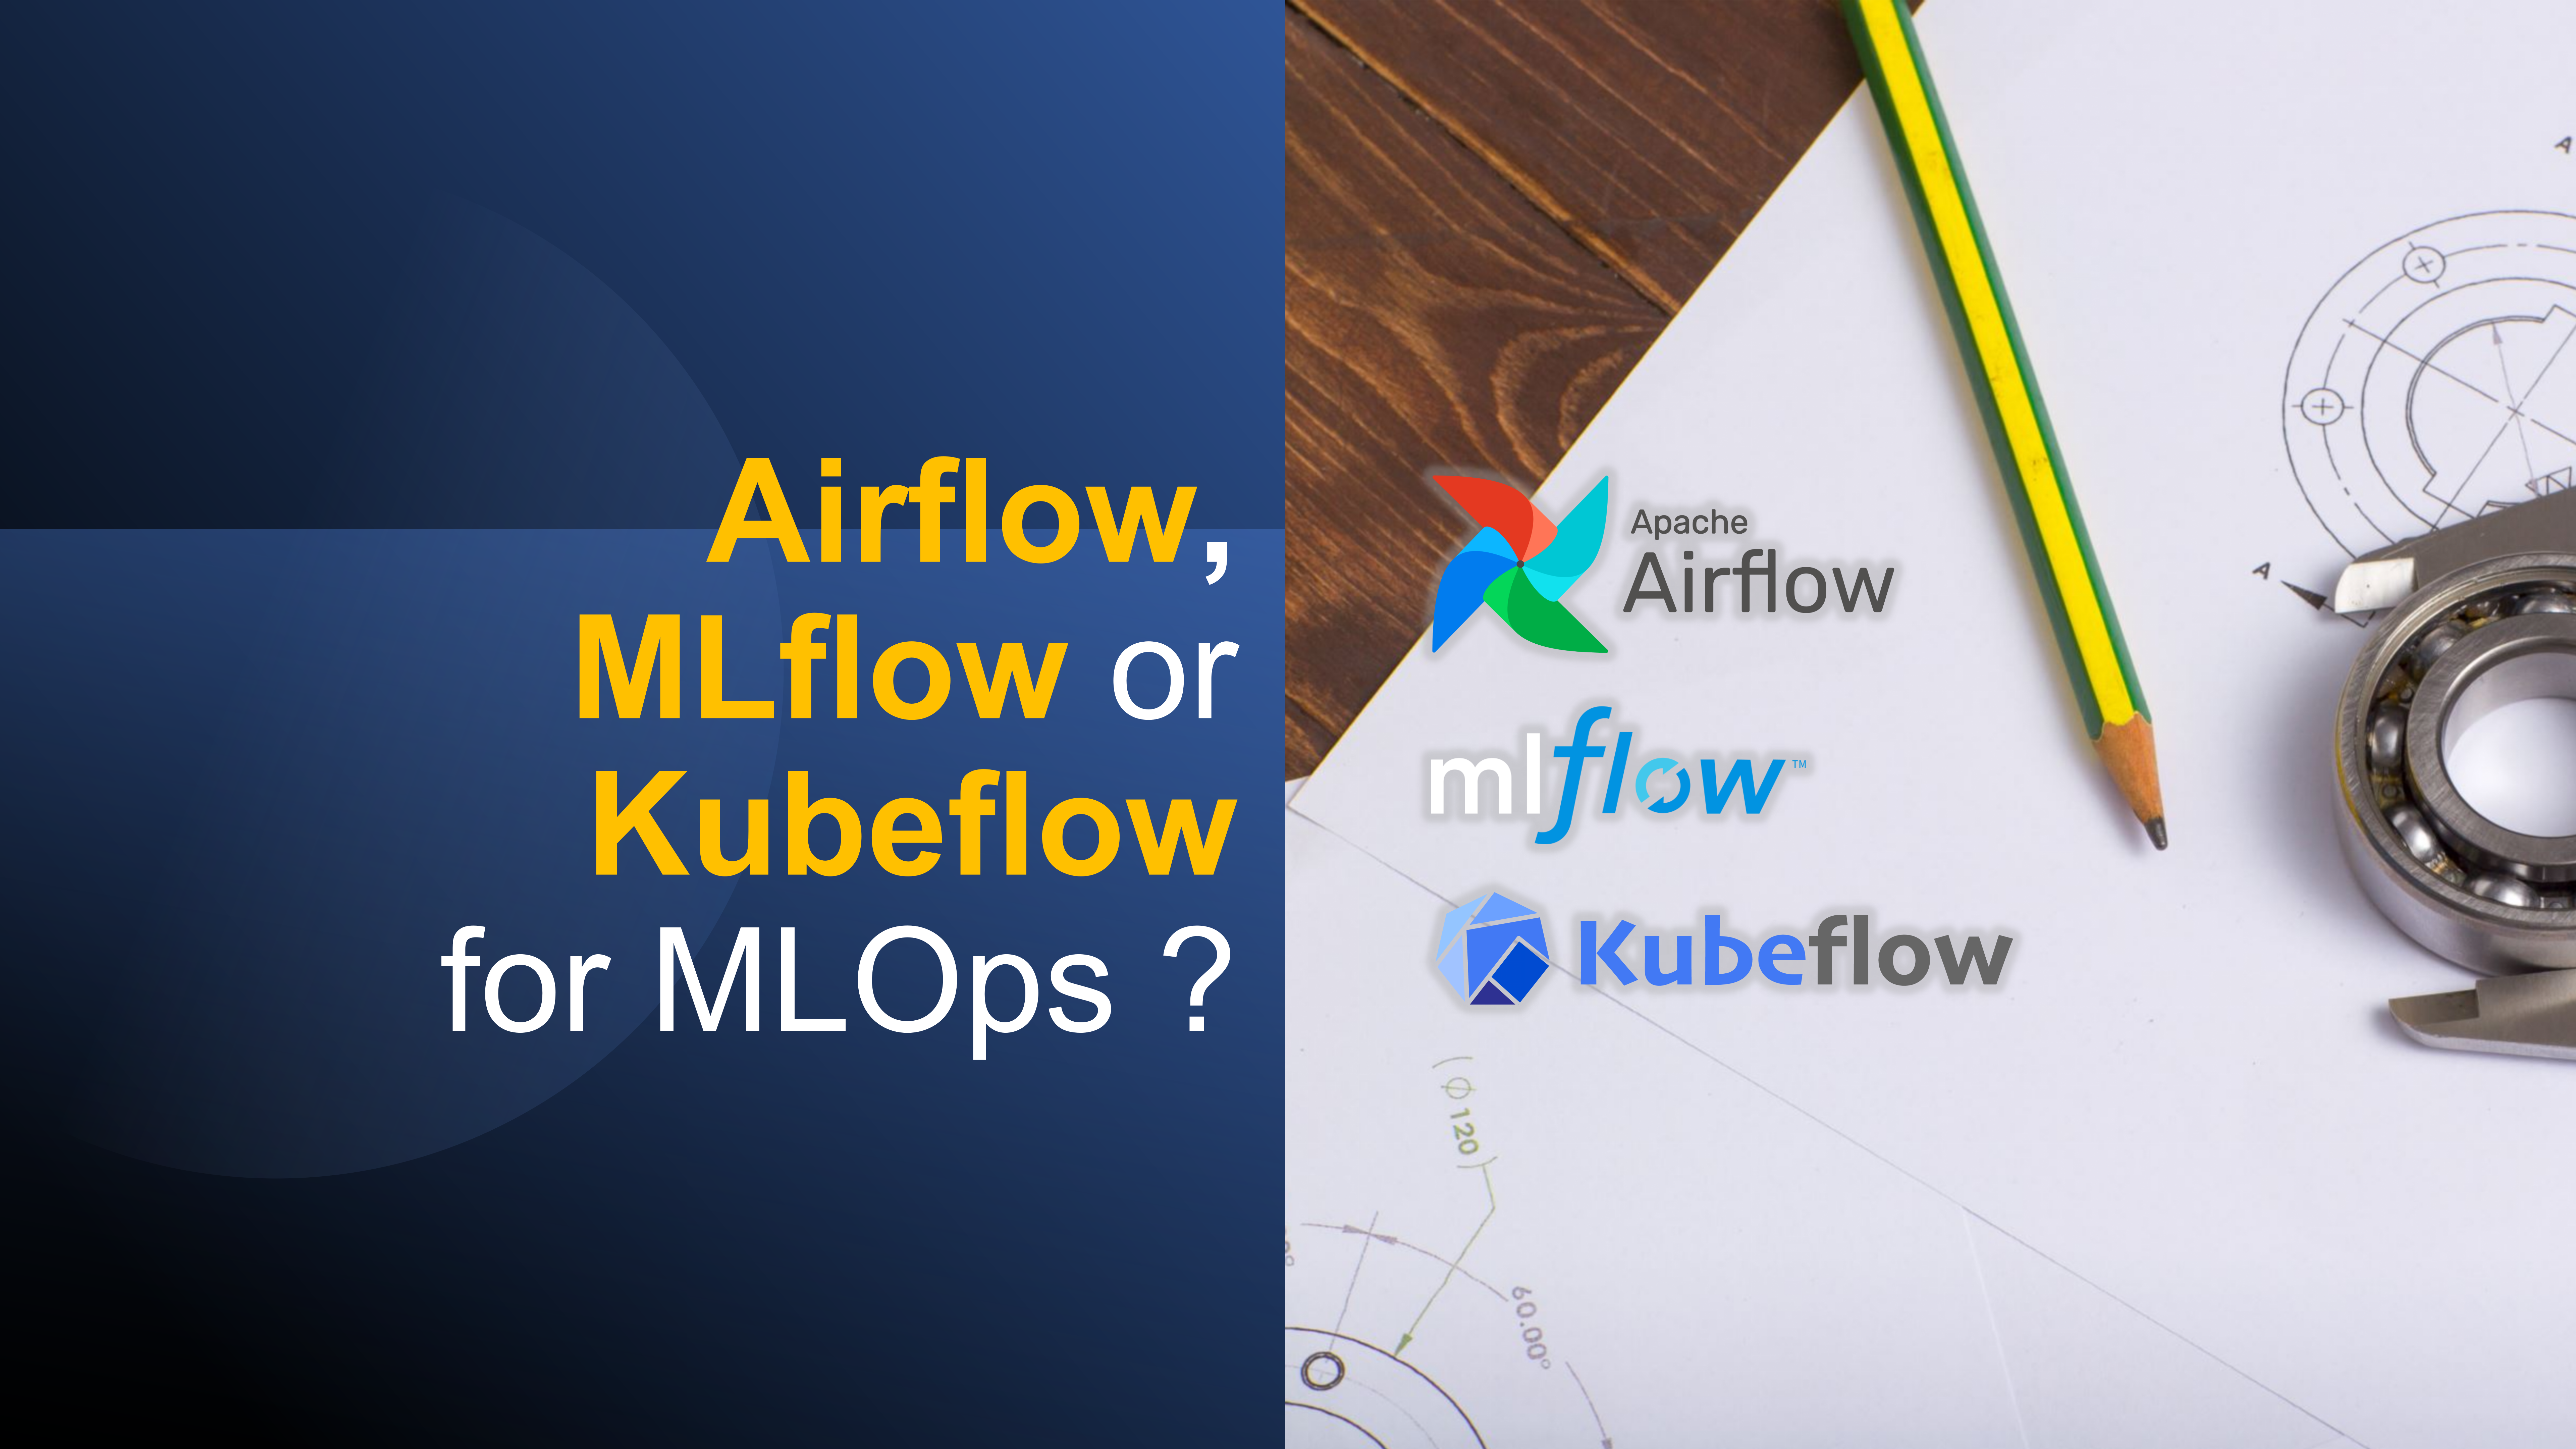 Airflow, MLflow or Kubeflow for MLOps?